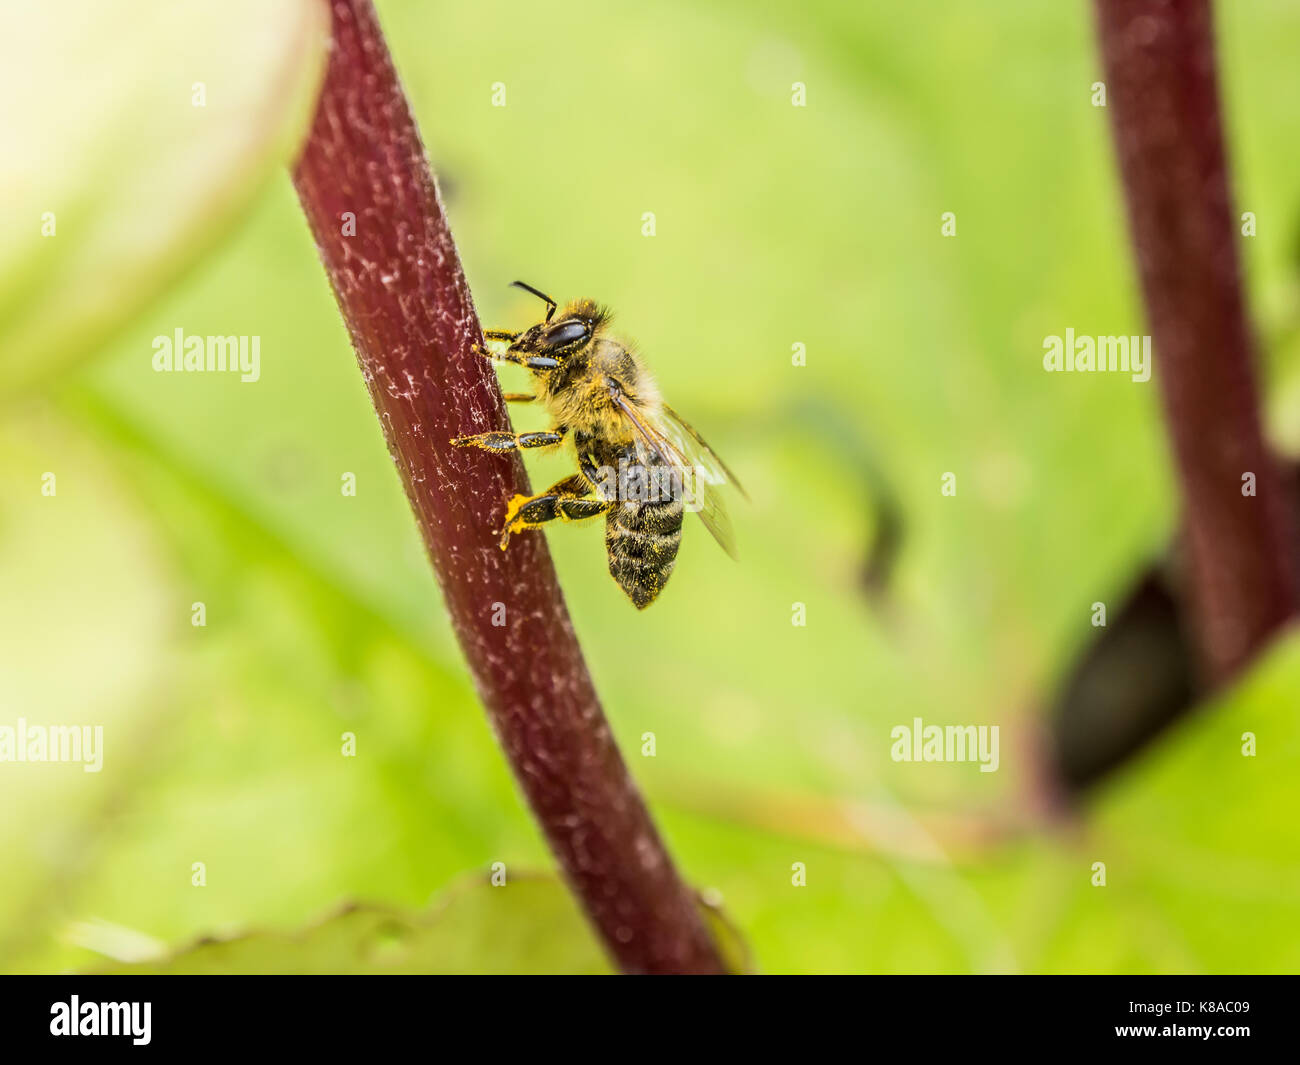 Impollinatori. Honey Bee seduta su un fiore rosso ramoscello. vista macro. fotografia di close-up. sfondo verde. Foto Stock